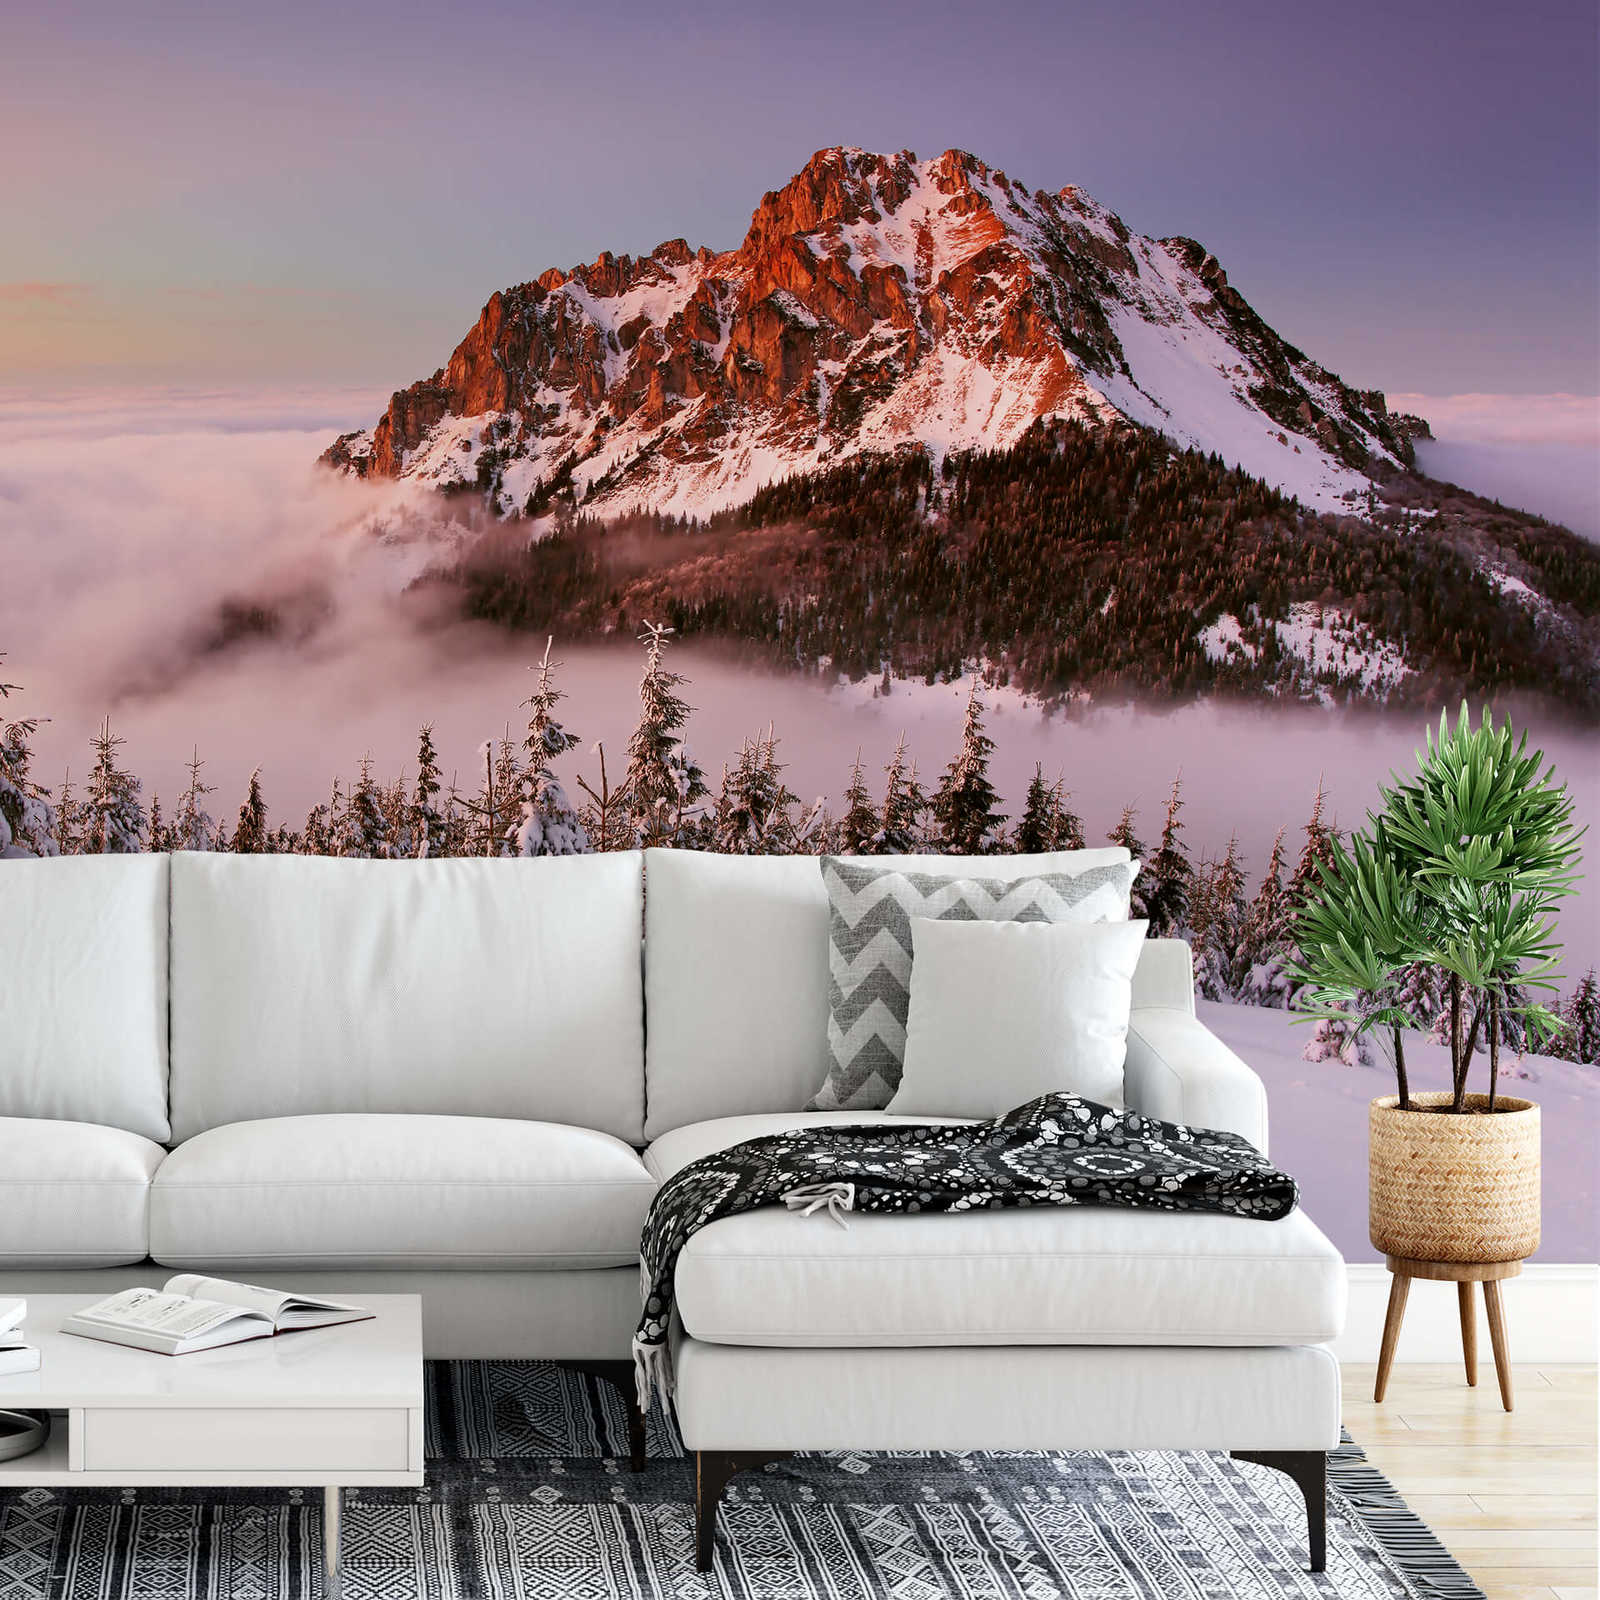             Fototapete Bergspitze mit Schnee – Weiß, Braun, Grün
        